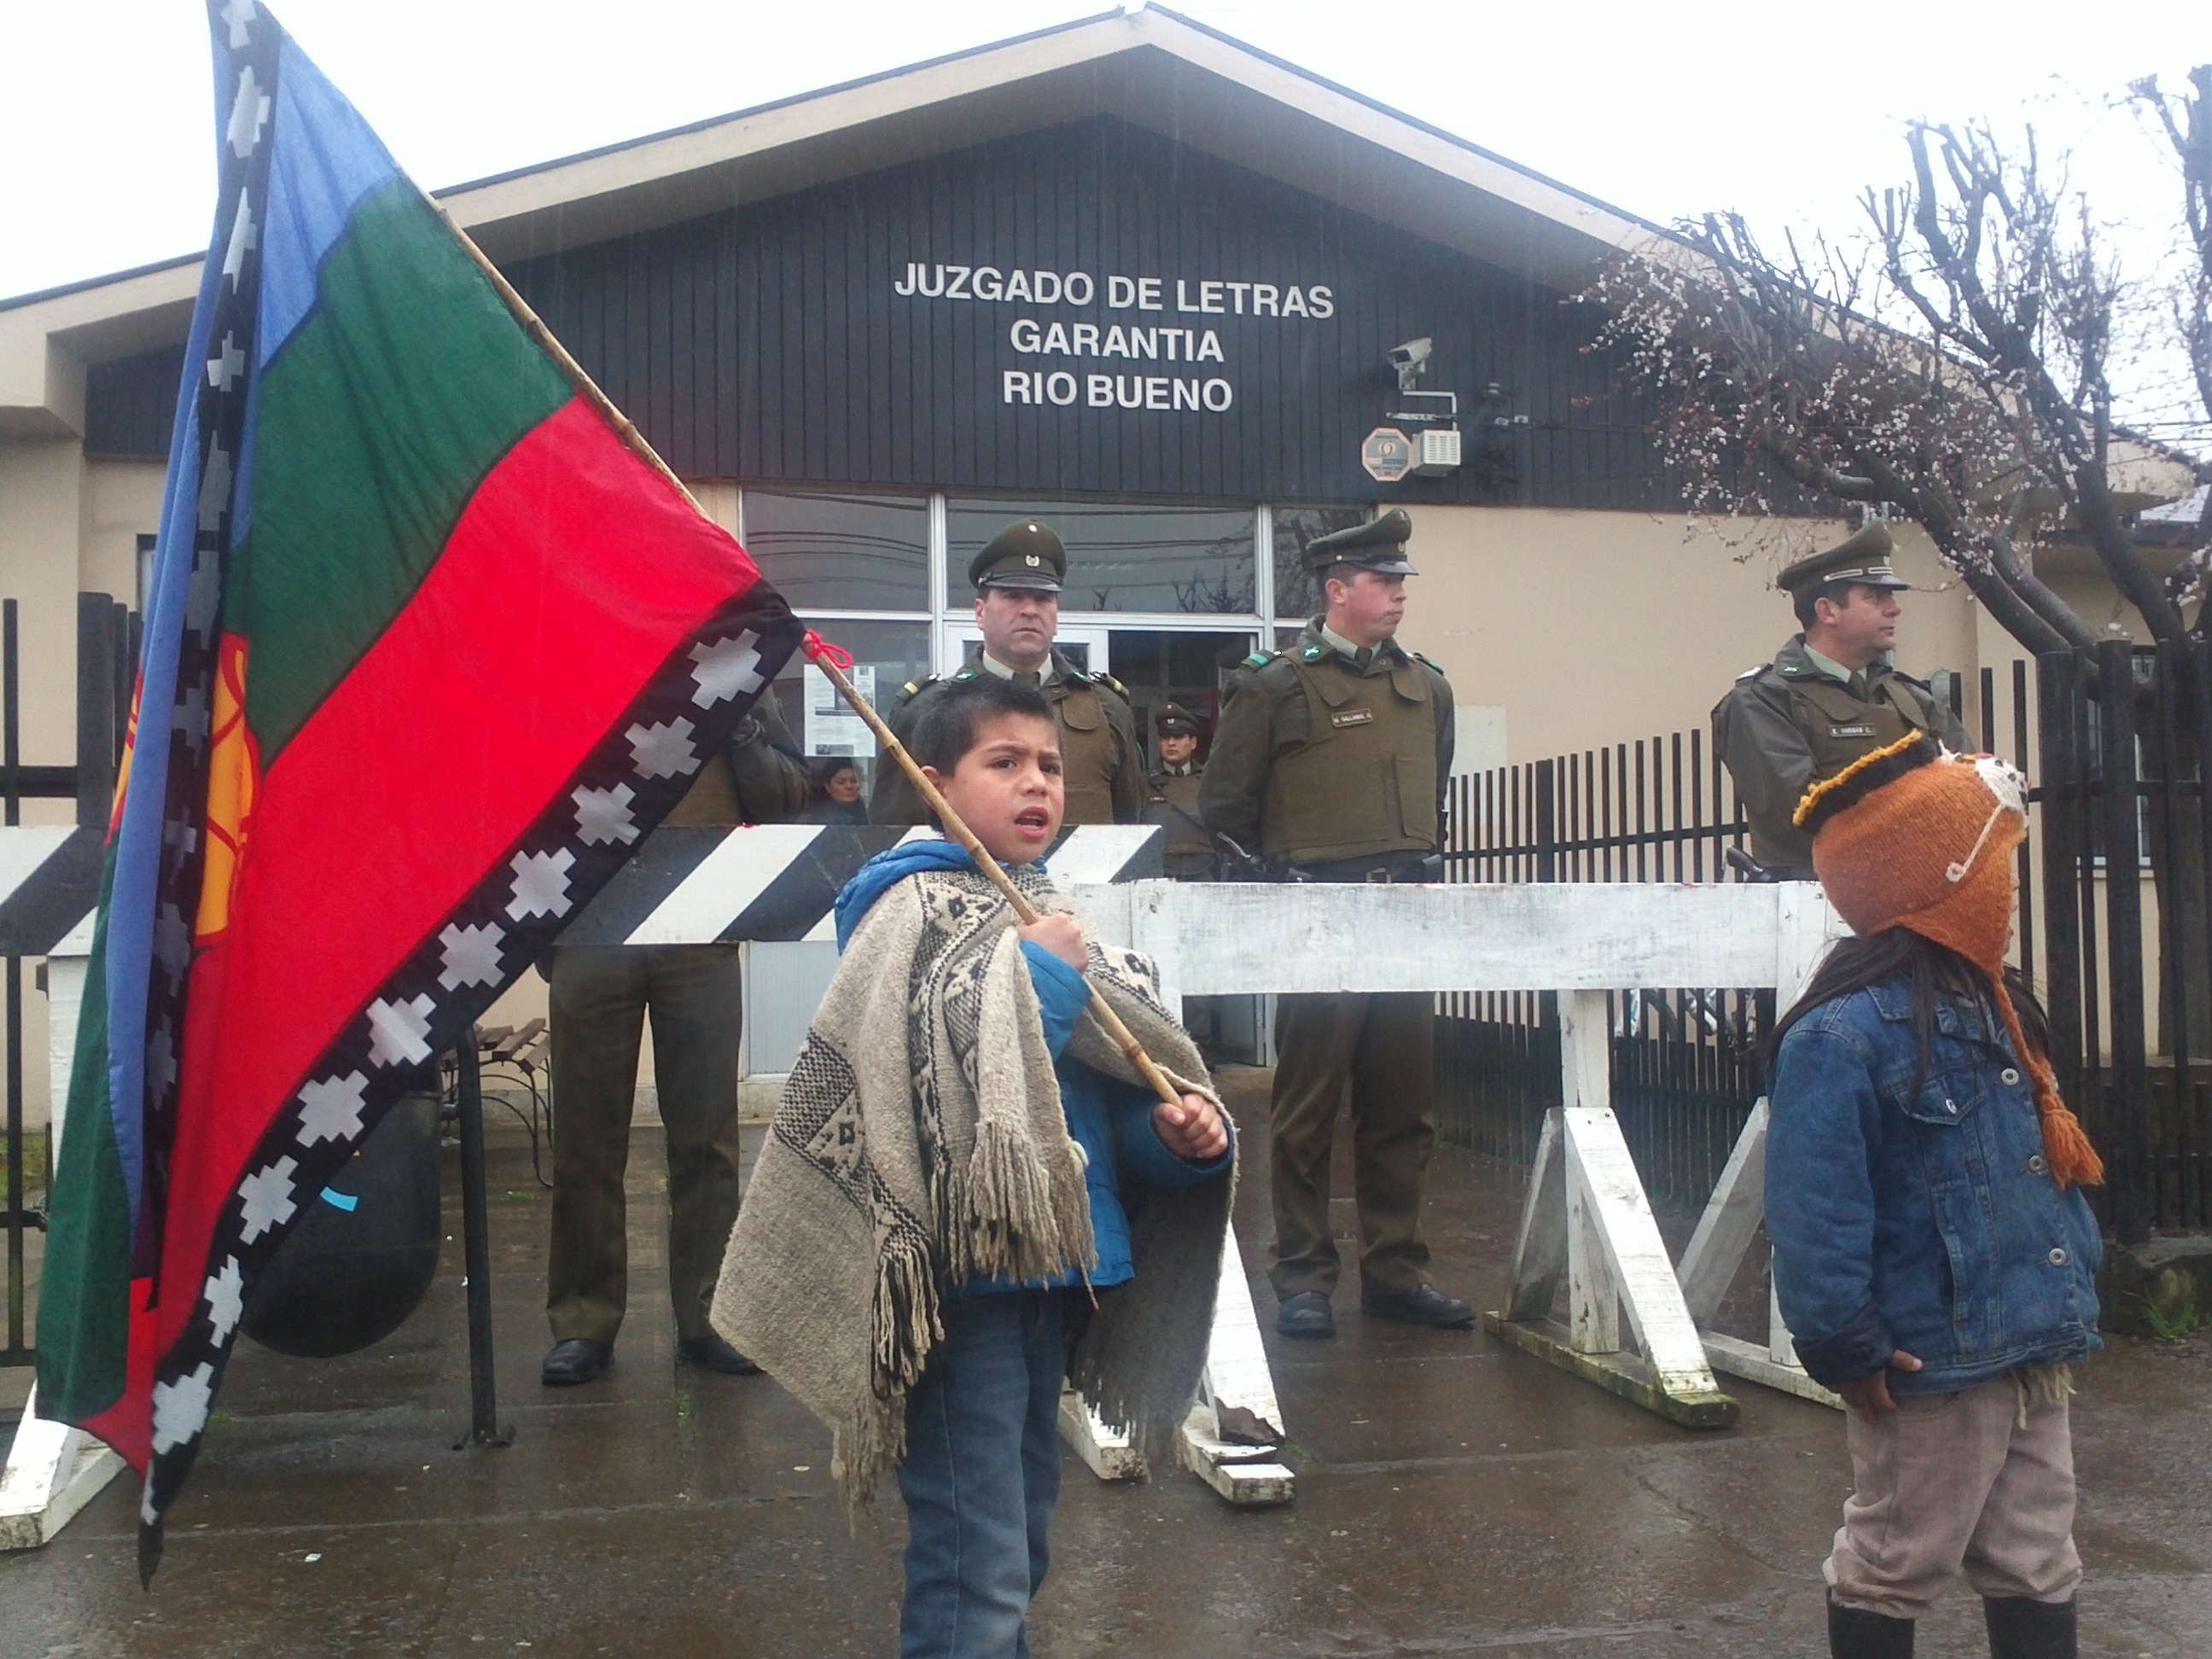 Terra e libertà, la resistenza dei Mapuche